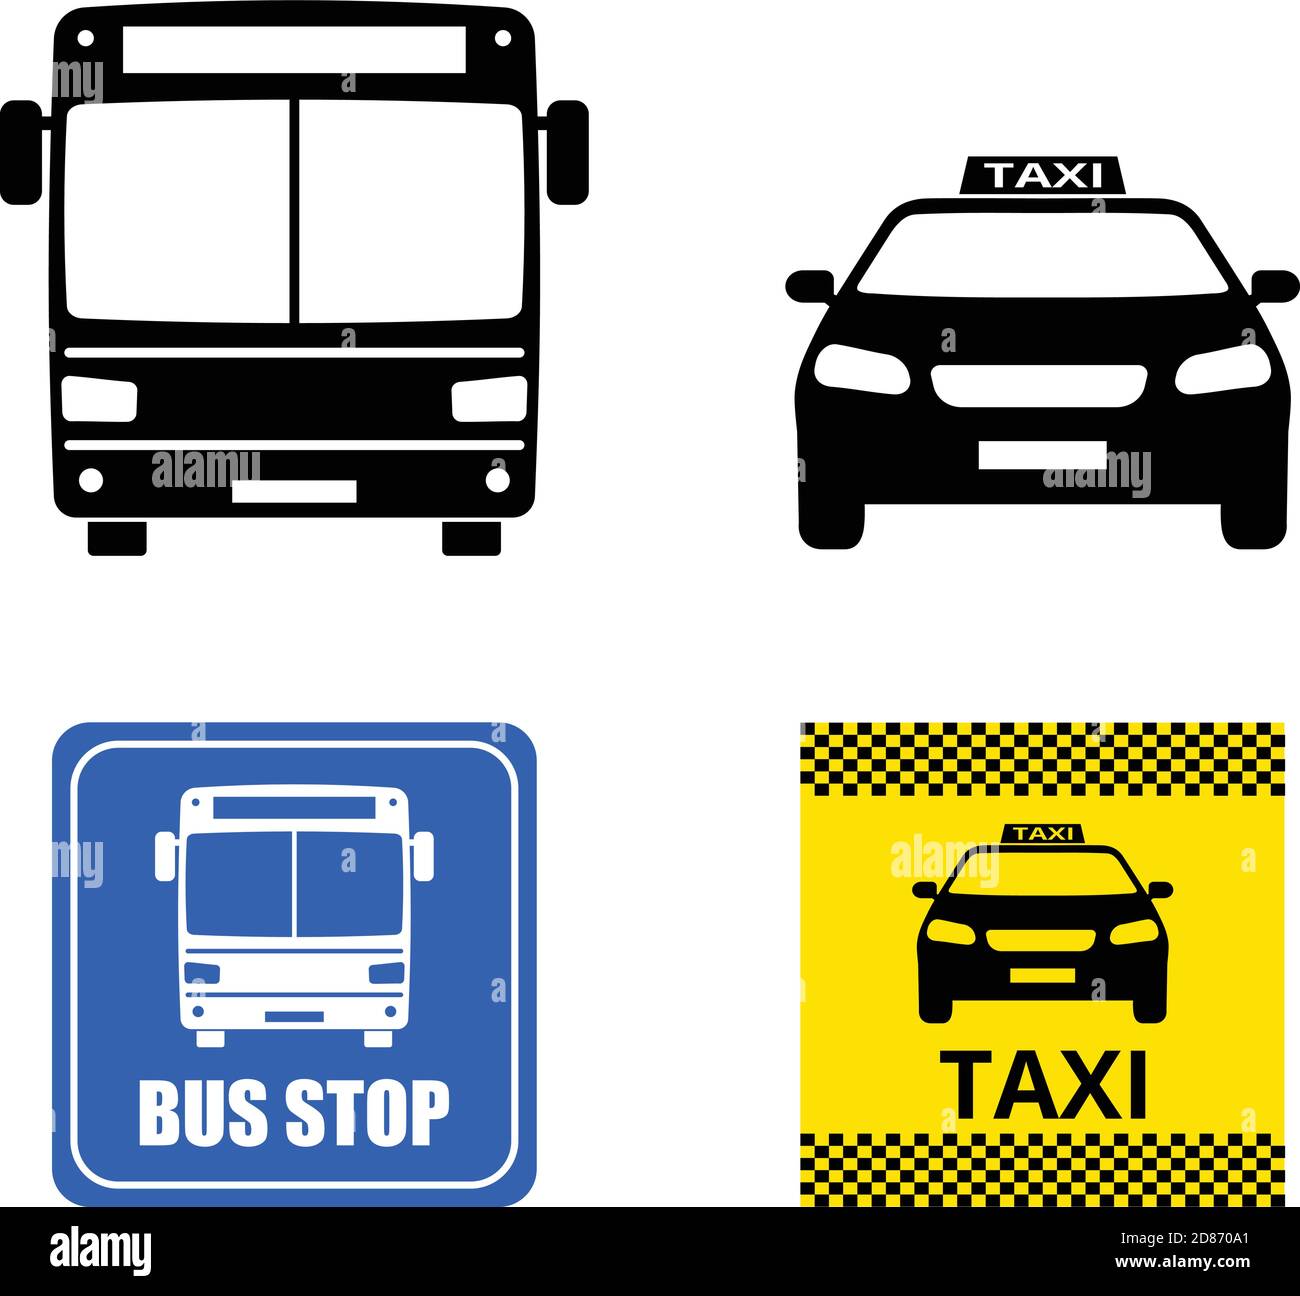 iconos y señales de transporte público - vector Ilustración del Vector